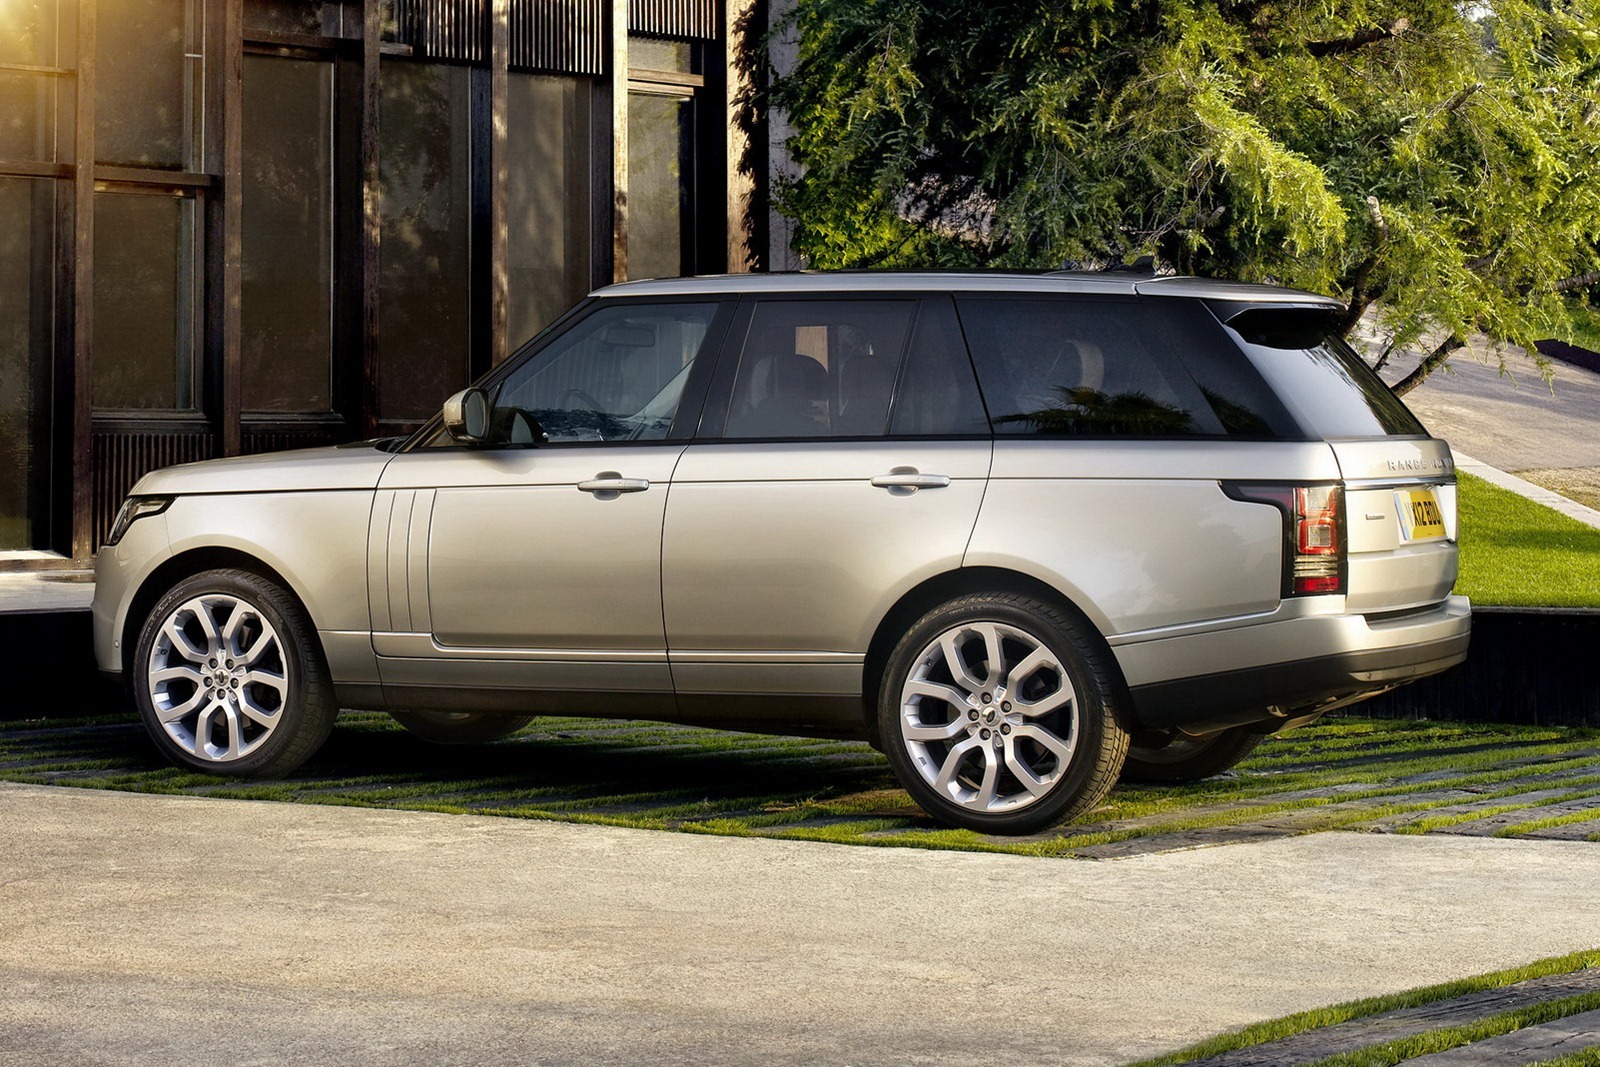 Principalele modificari stilistice ale noului Range Rover sunt farurile si stopurile